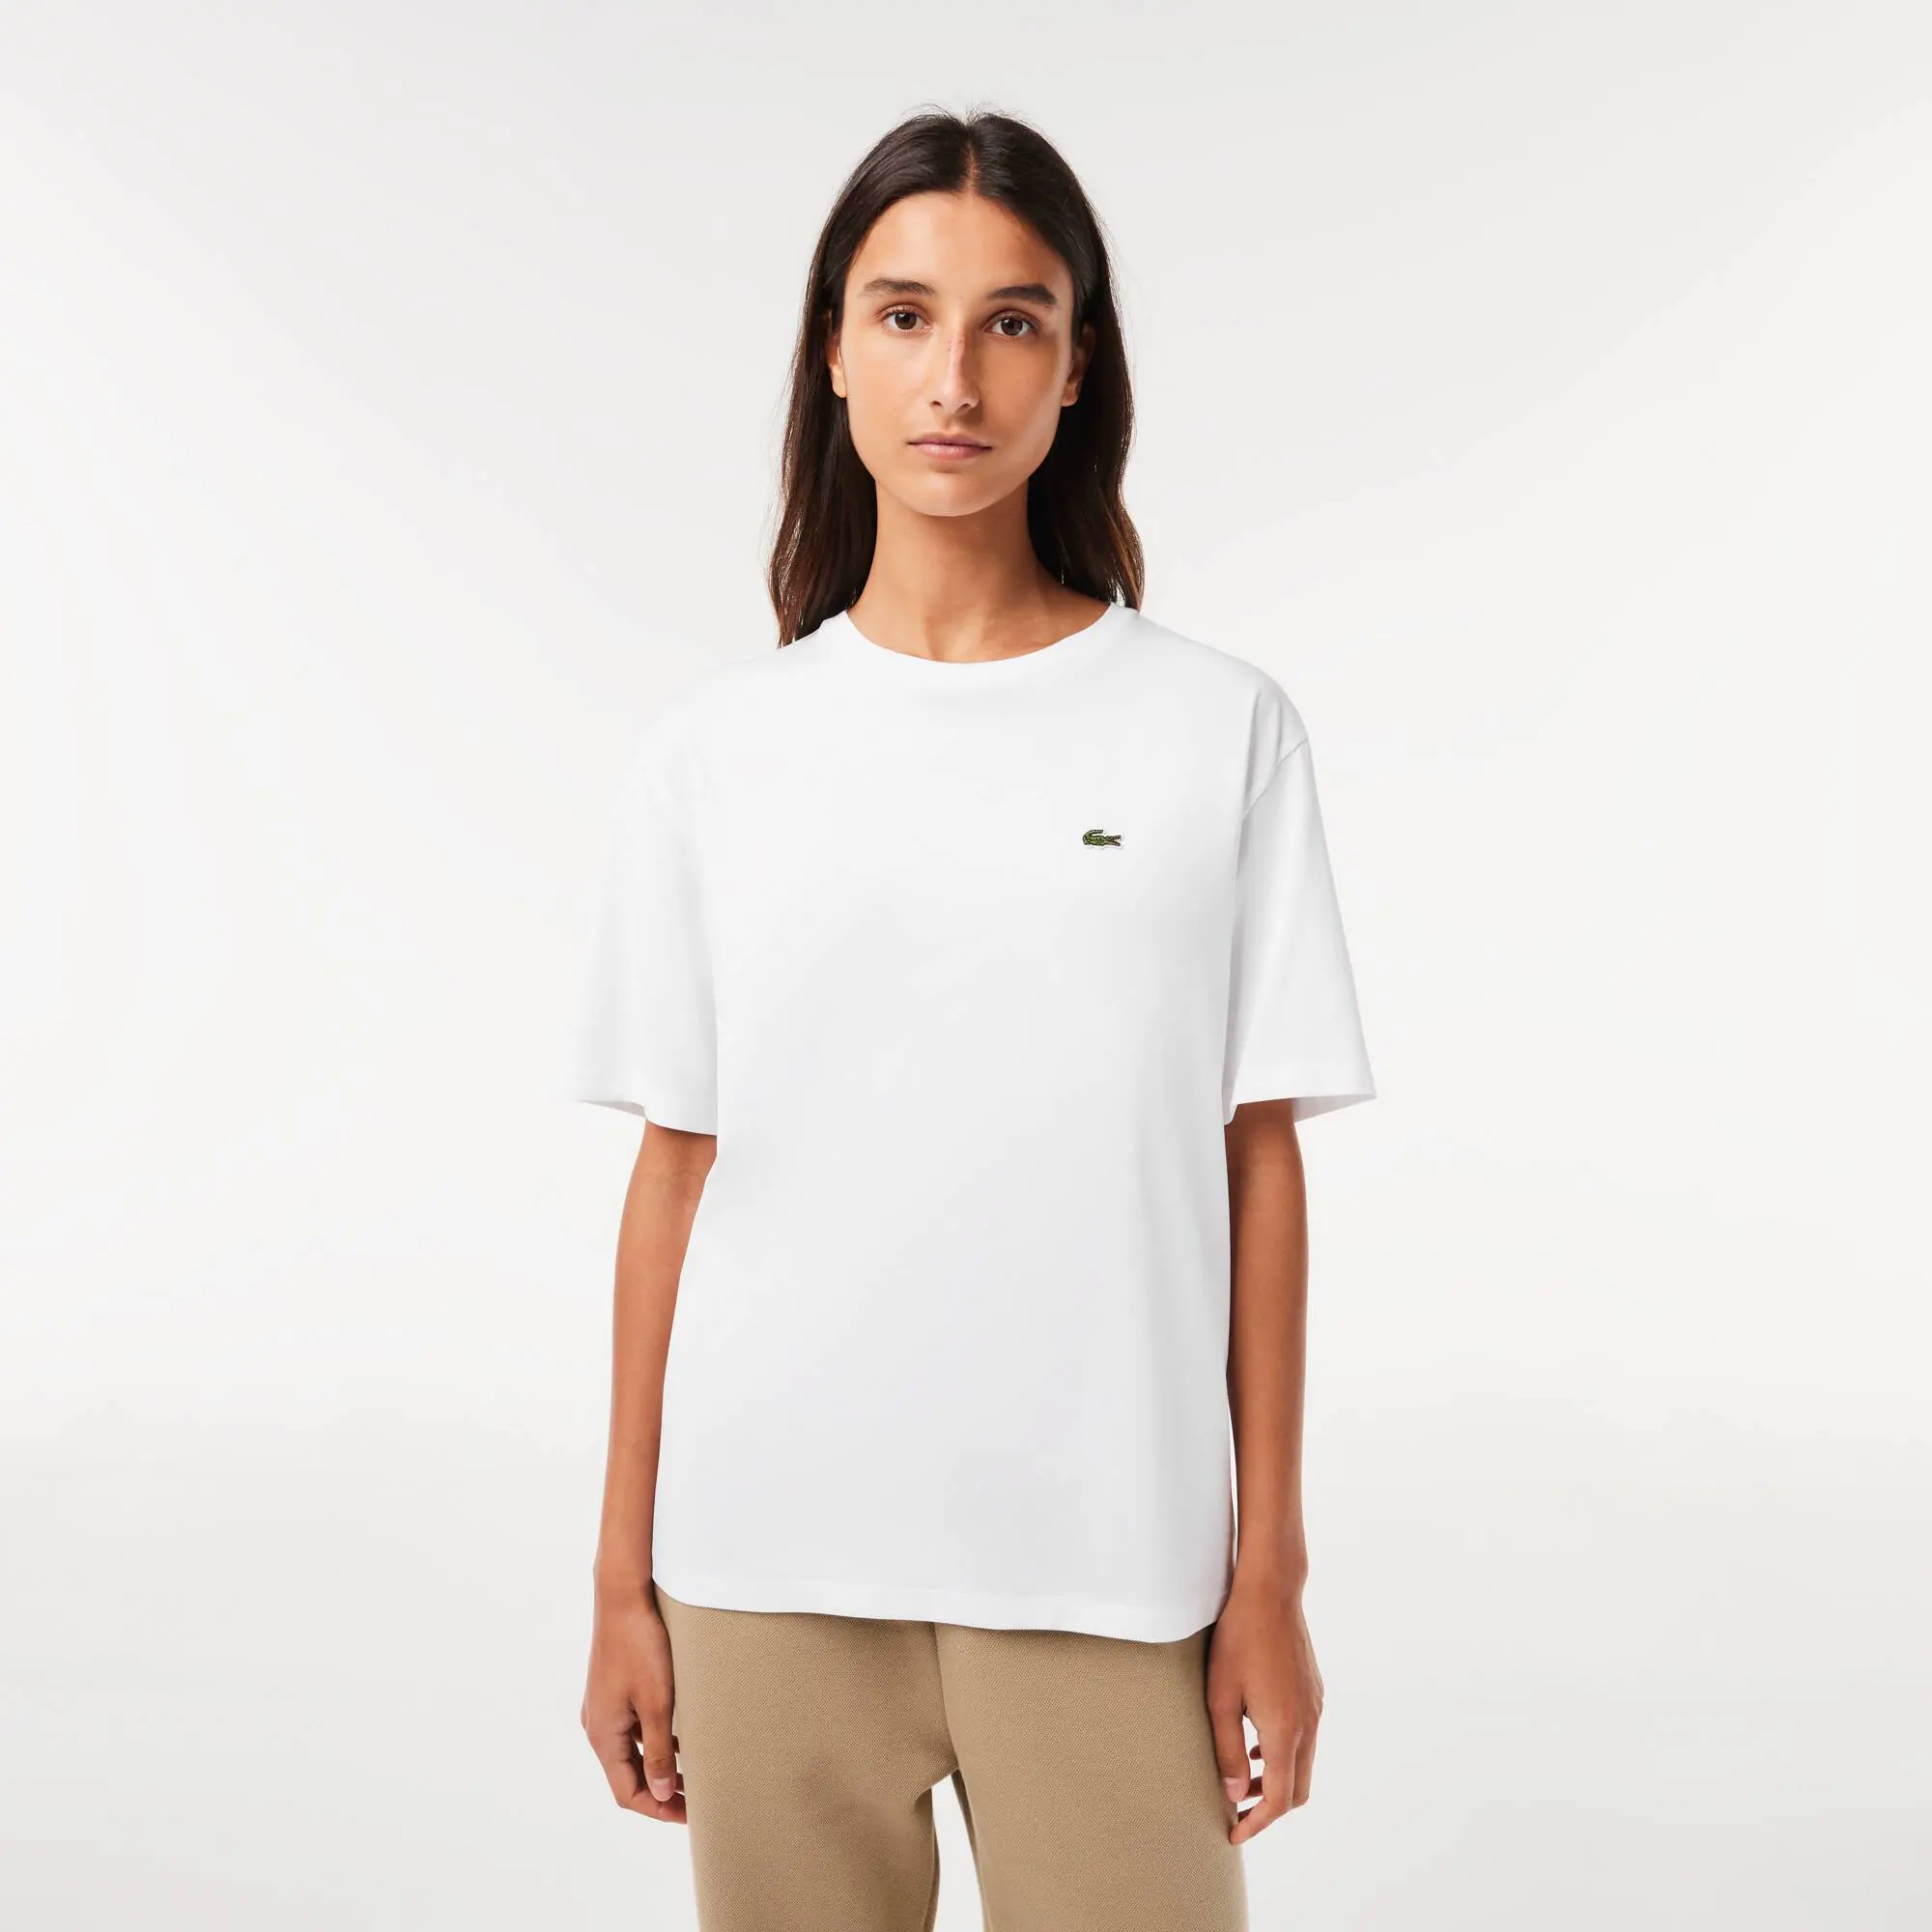 Lacoste Women’s Crew Neck Premium Cotton T-shirt. 1